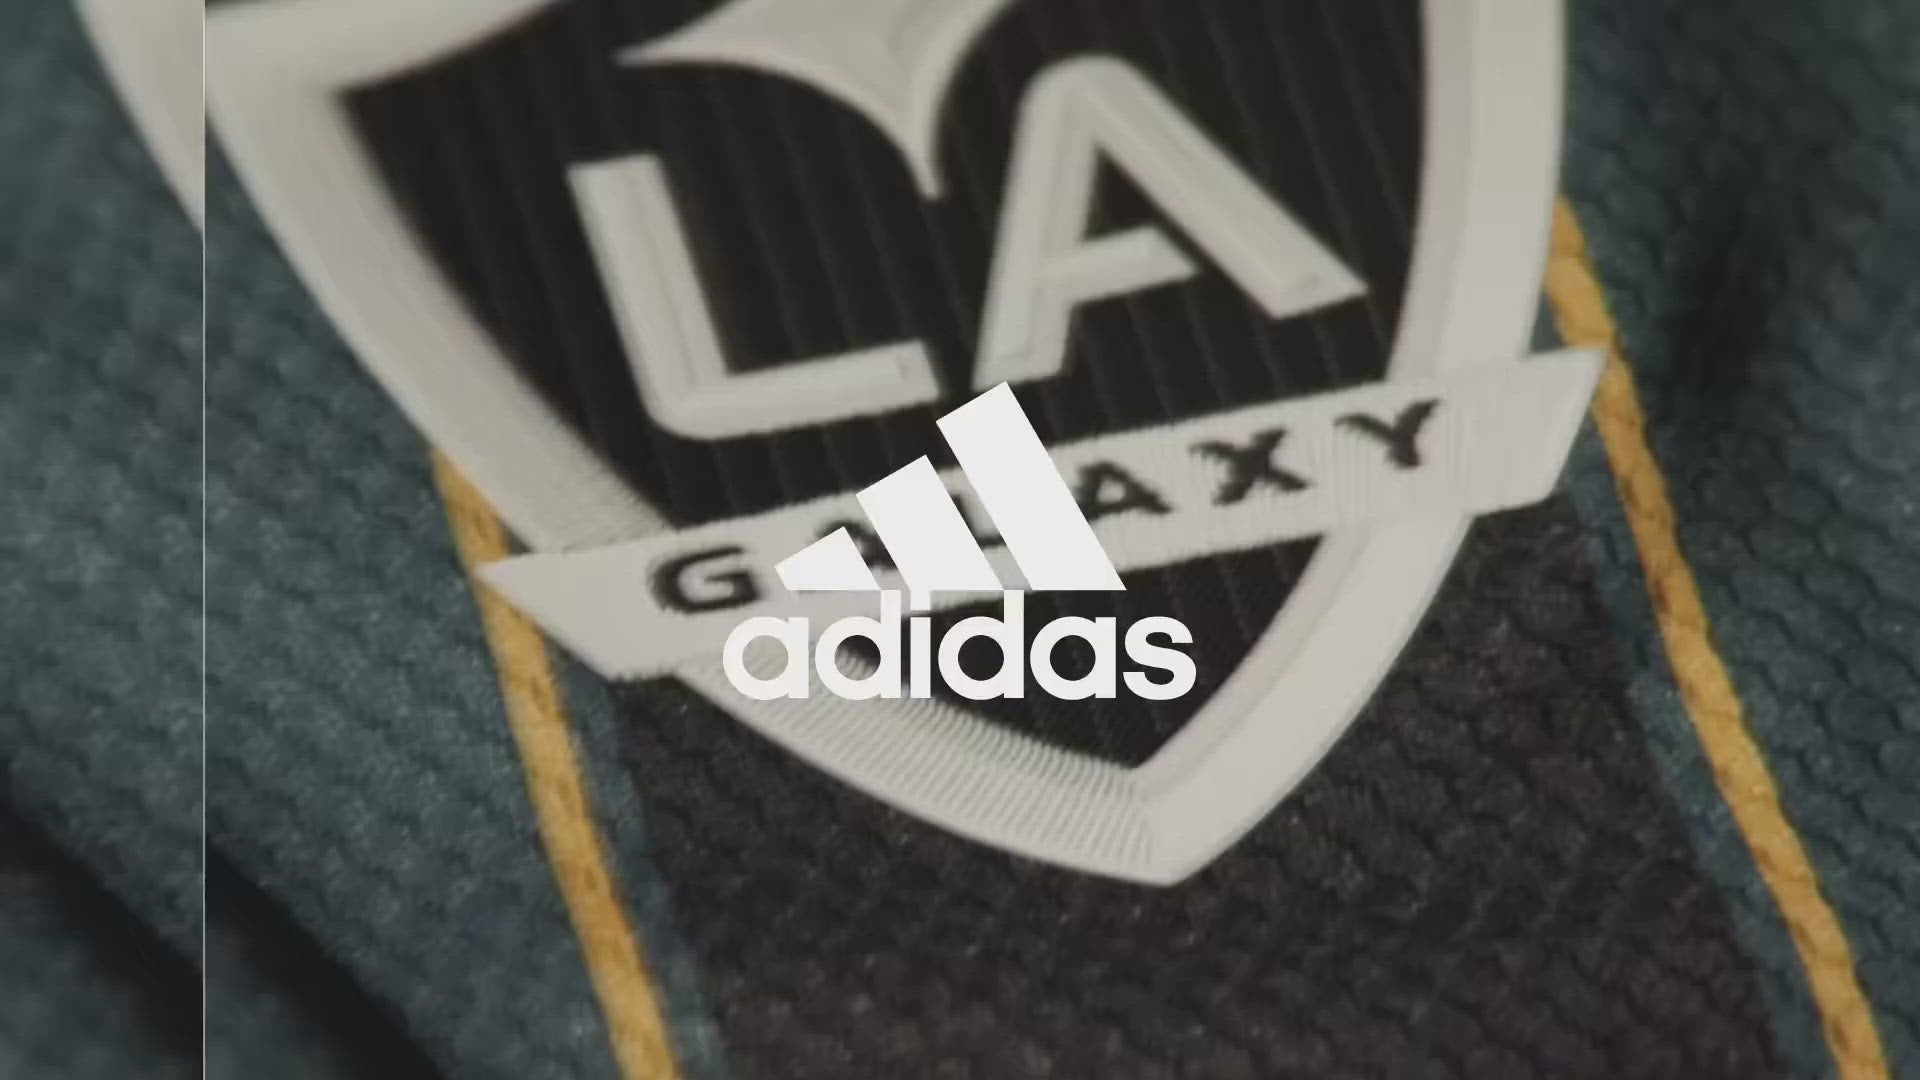 Adidas La Galaxy Away Jersey 2021/22 Youth, L